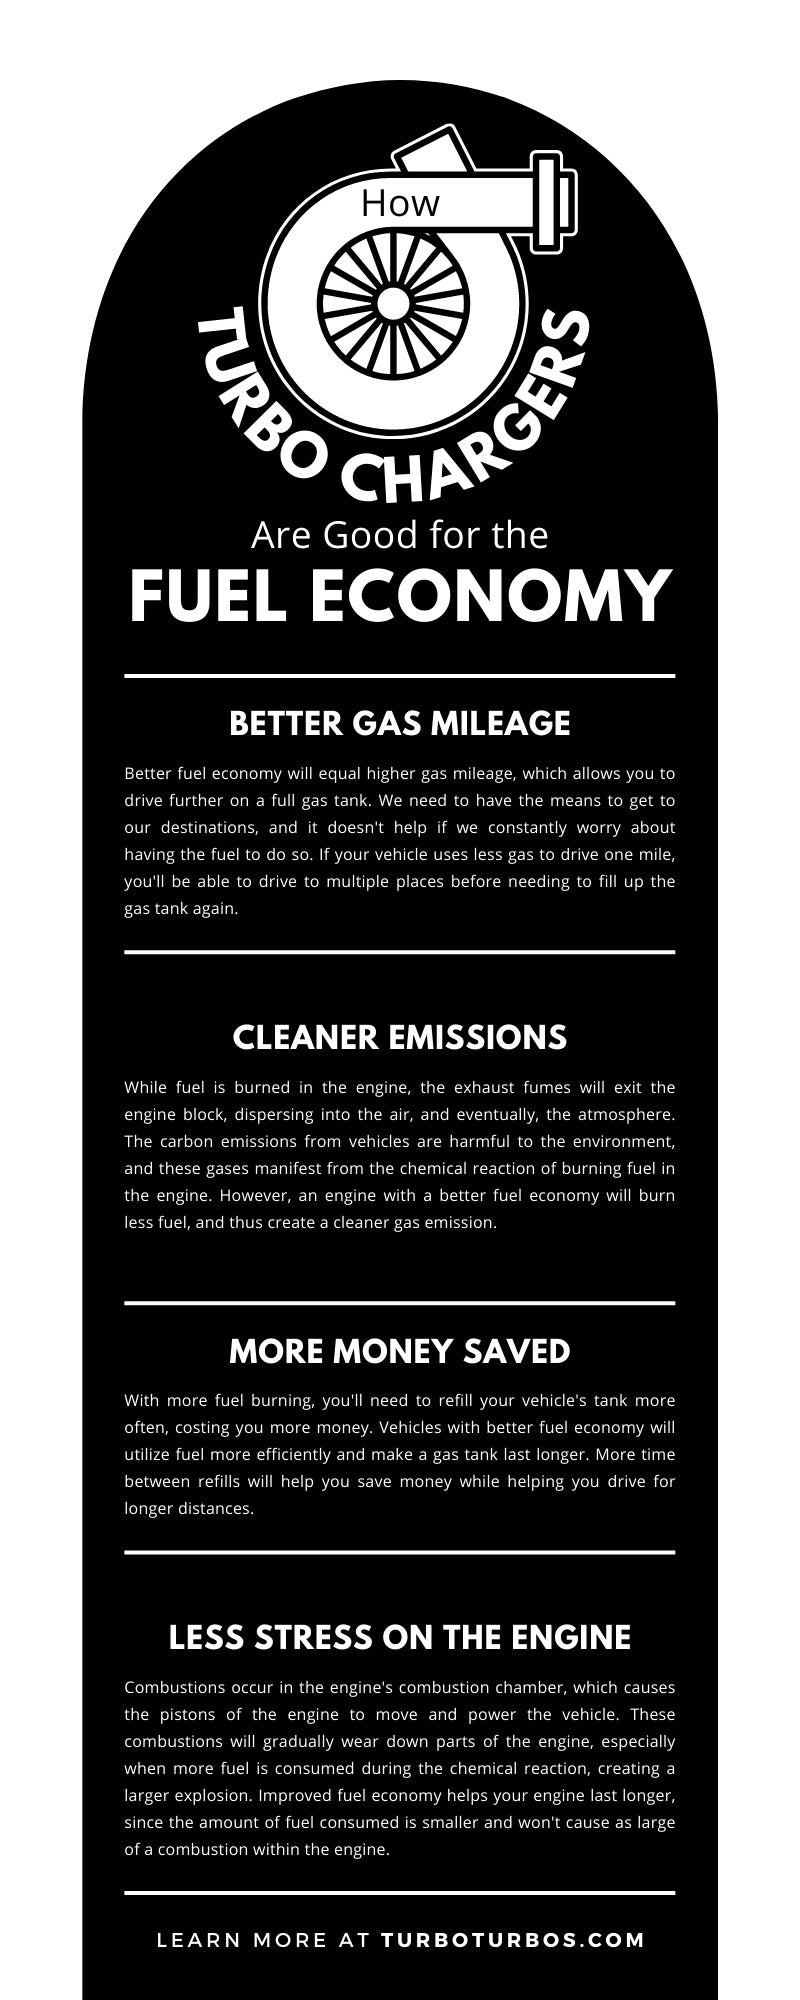 Cómo los turbocompresores son buenos para la economía de combustible